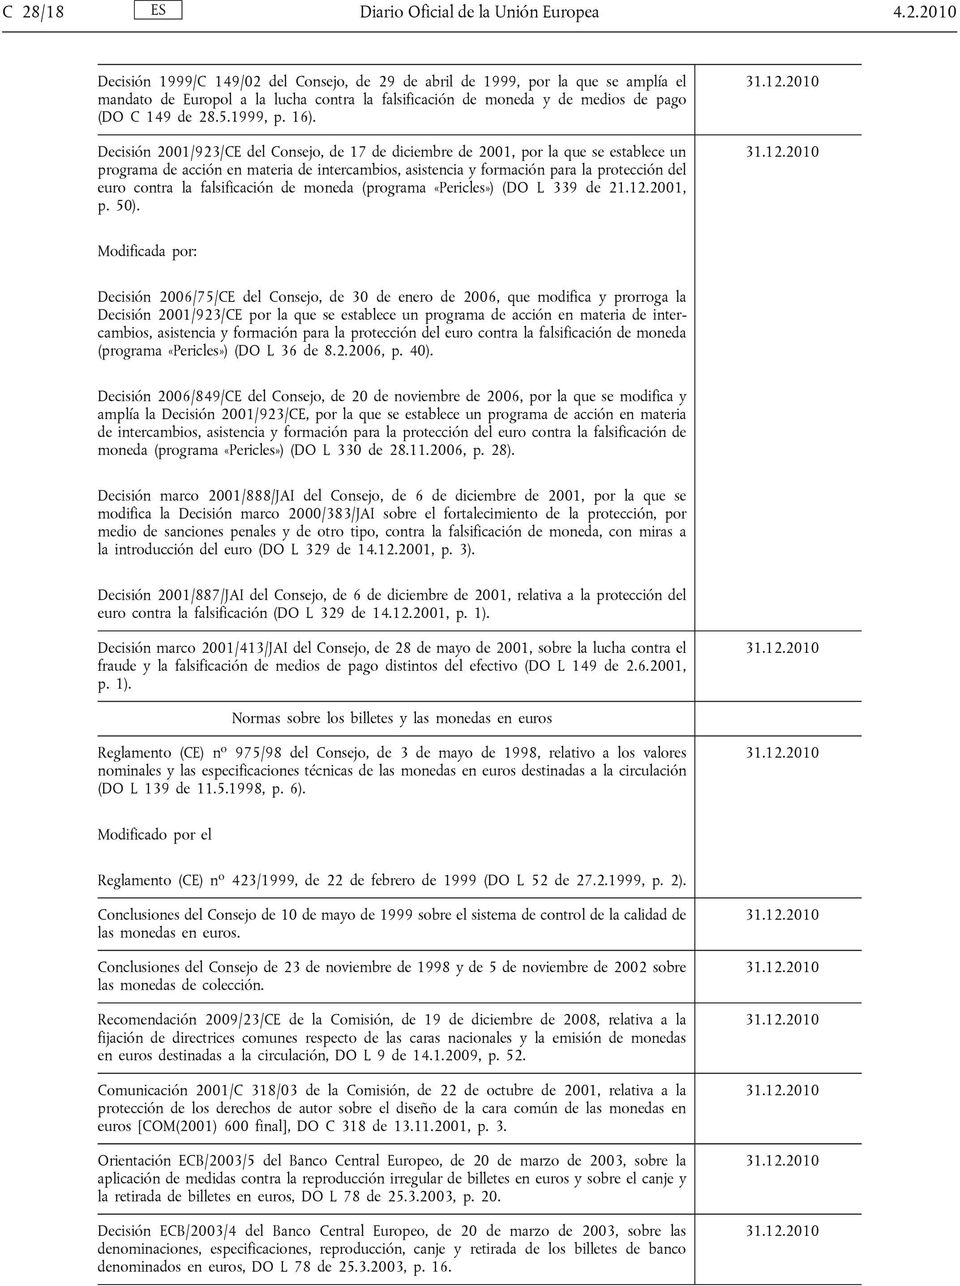 Decisión 2001/923/CE del Consejo, de 17 de diciembre de 2001, por la que se establece un programa de acción en materia de intercambios, asistencia y formación para la protección del euro contra la